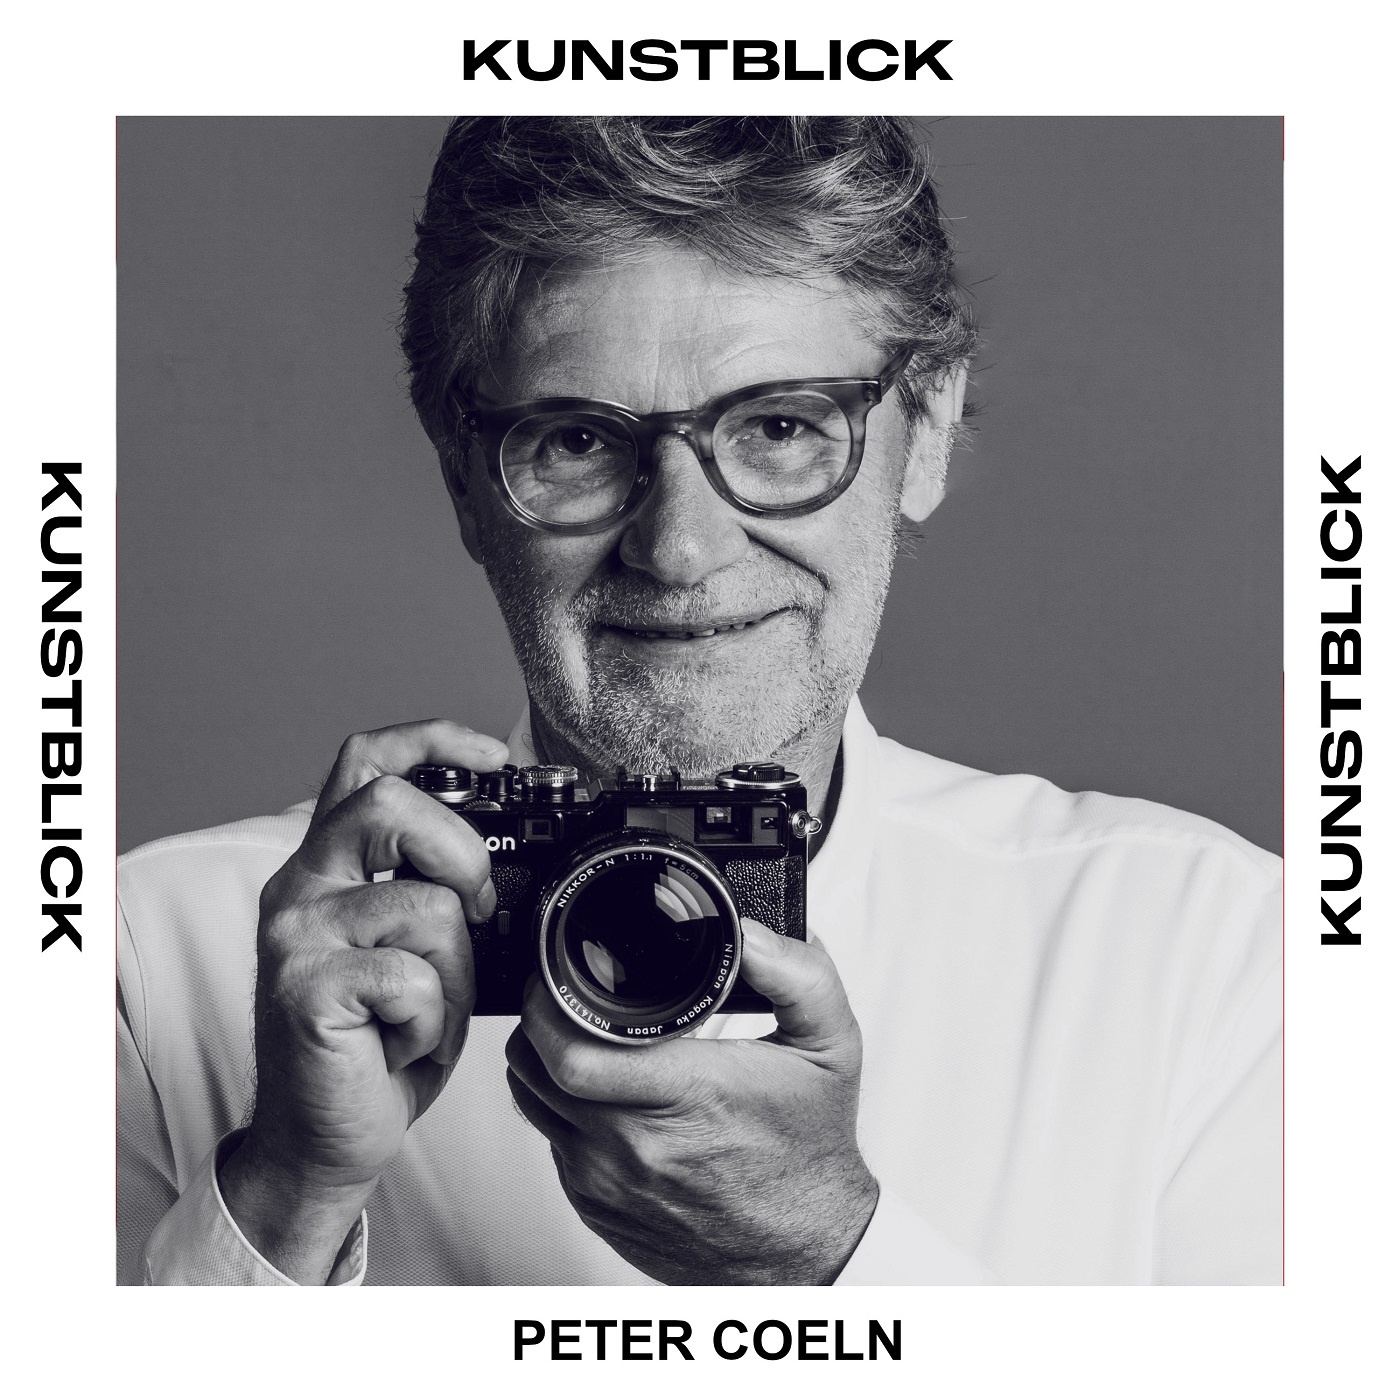 Peter Coeln - Fotograf und Gründer von Westlicht